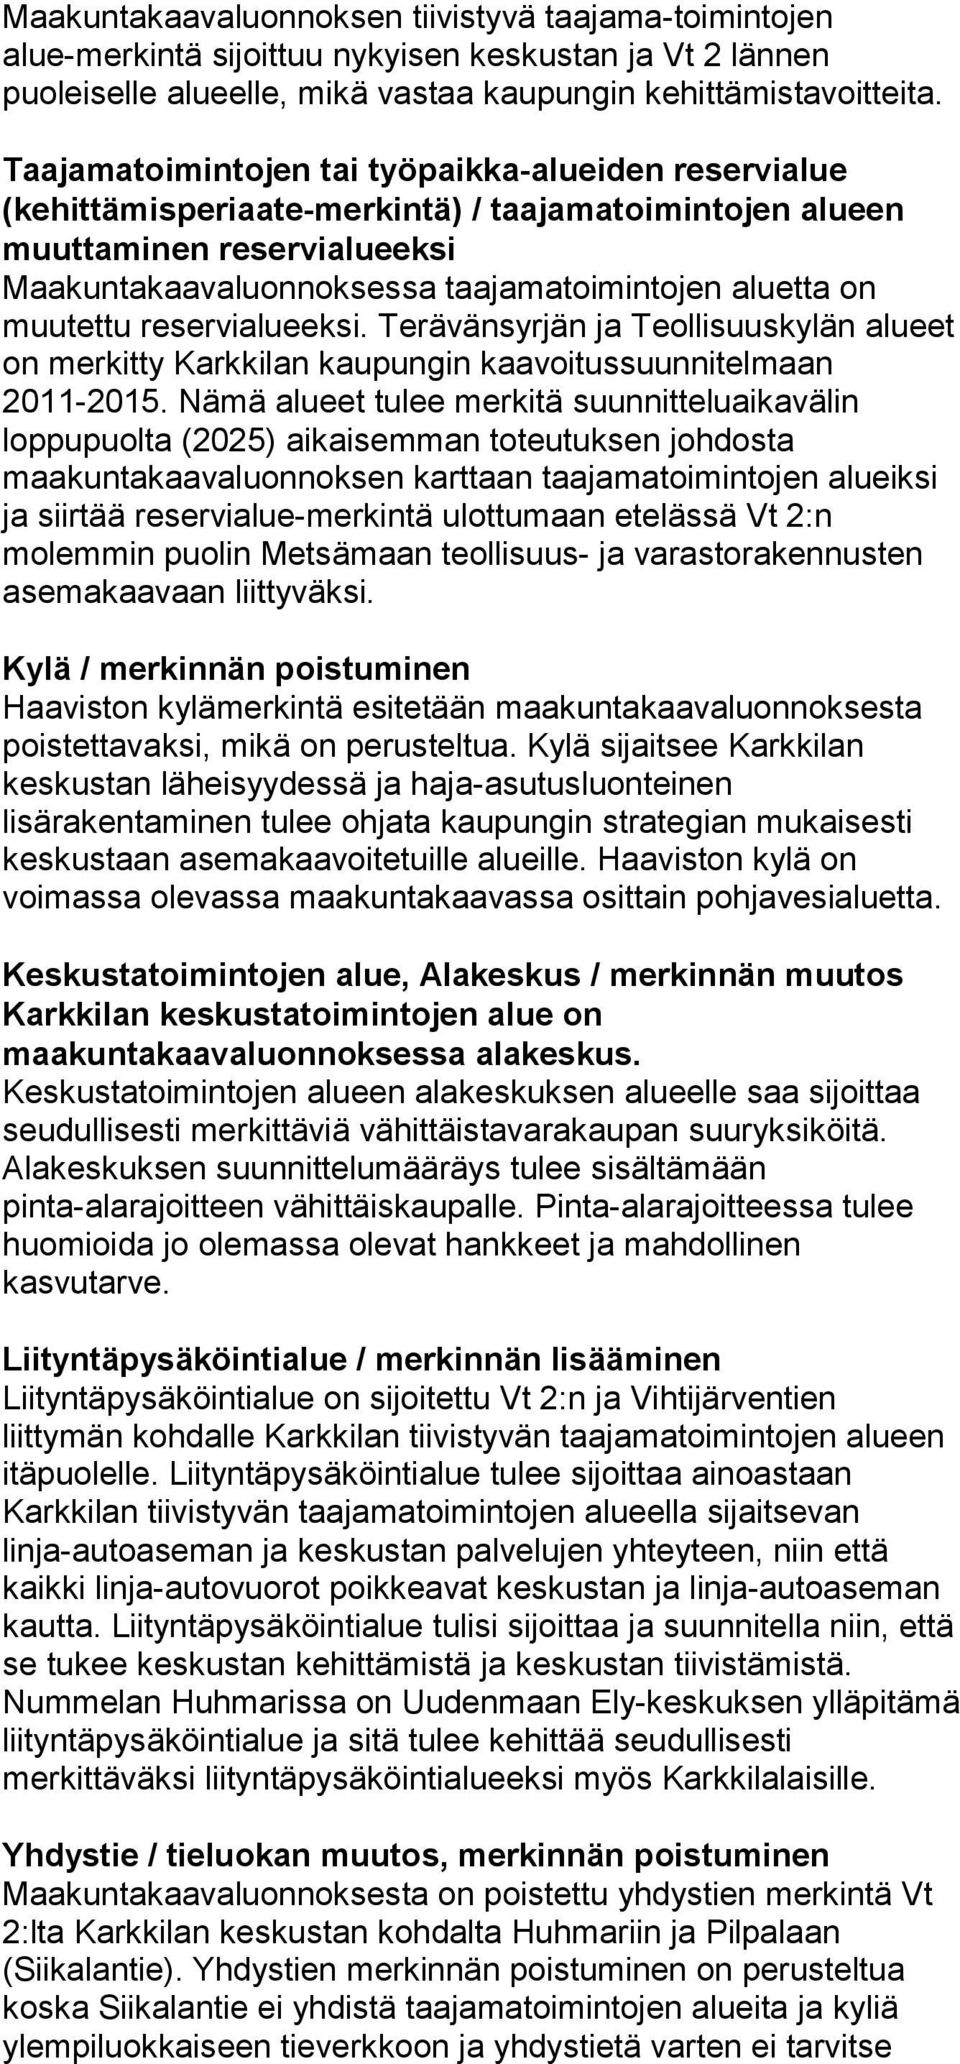 muutettu reservialueeksi. Terävänsyrjän ja Teollisuuskylän alueet on merkitty Karkkilan kaupungin kaavoitussuunnitelmaan 2011-2015.